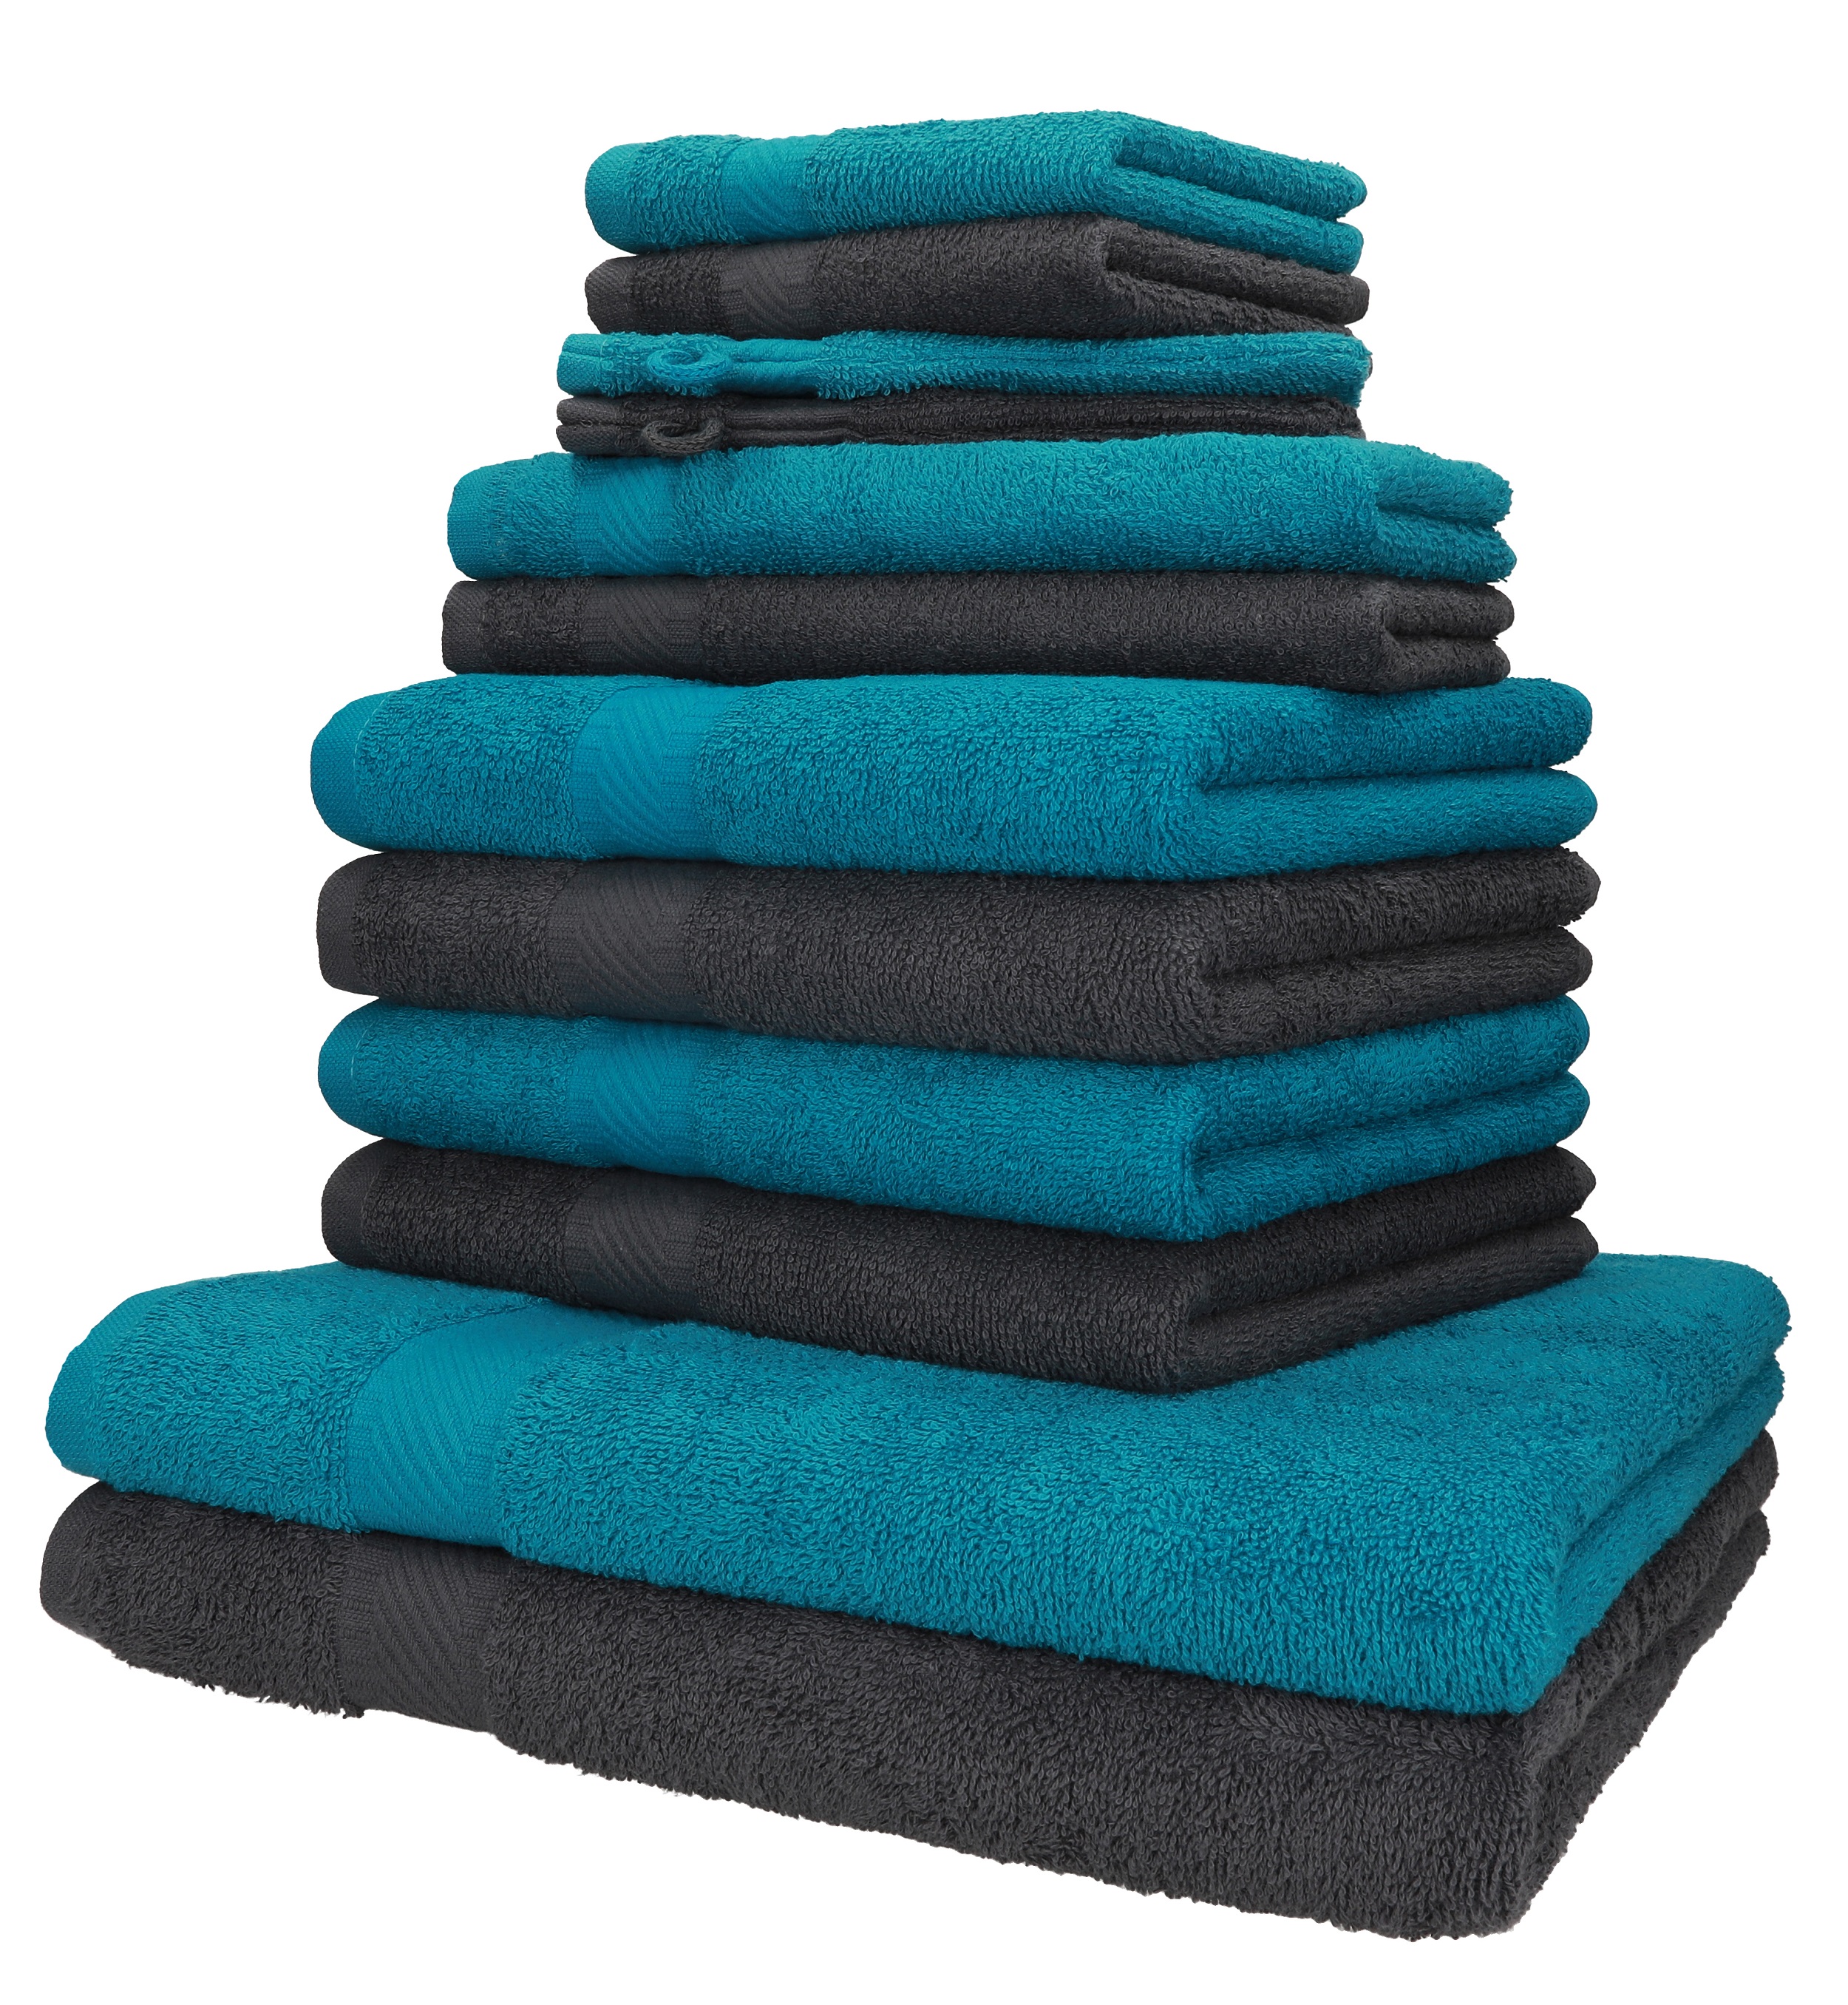 Betz 12-TLG Handtuch Set Premium 100% Baumwolle 2 Duschtücher 4 Handtücher 2 Gästetücher 2 Seiftücher 2 Waschhandschuhe Farbe Graphit grau/Ocean